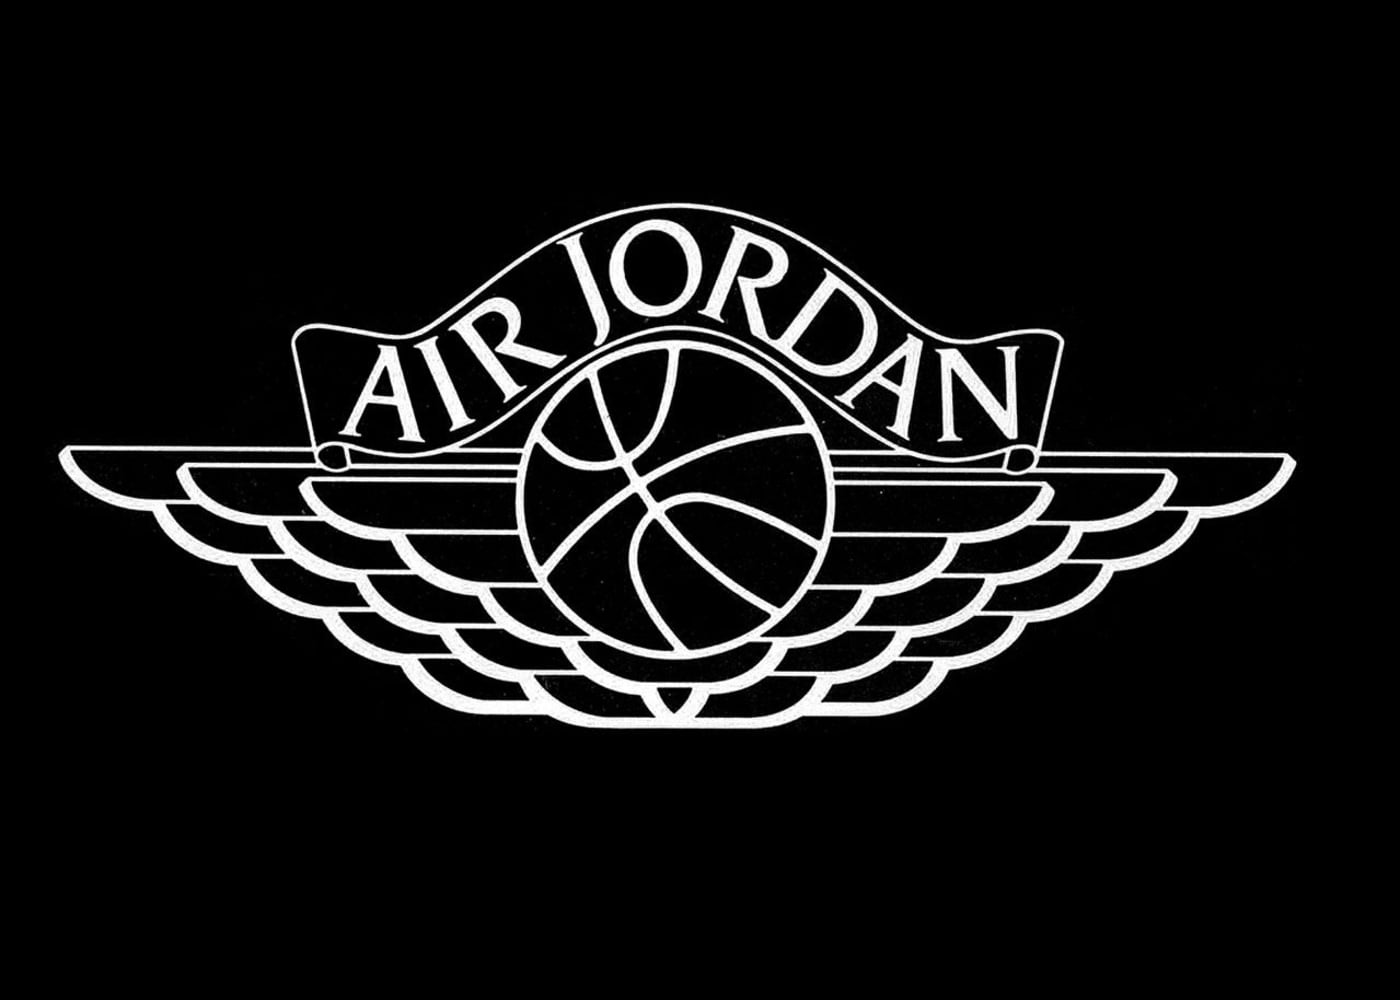 About Air Jordans 